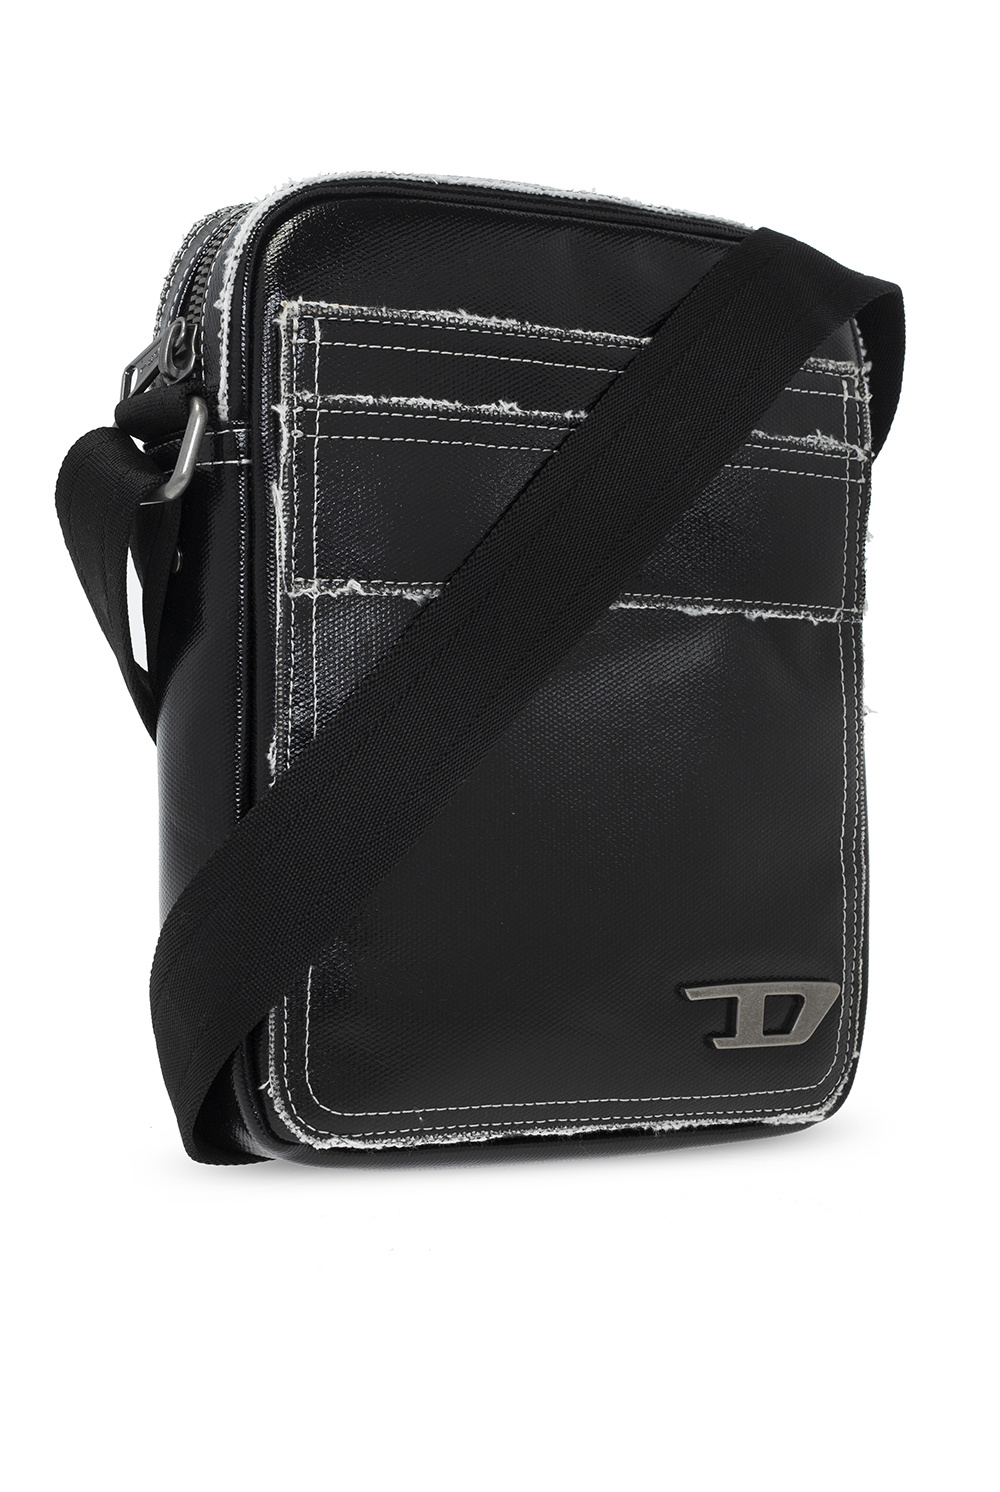 Diesel ‘Esto’ shoulder strap bag